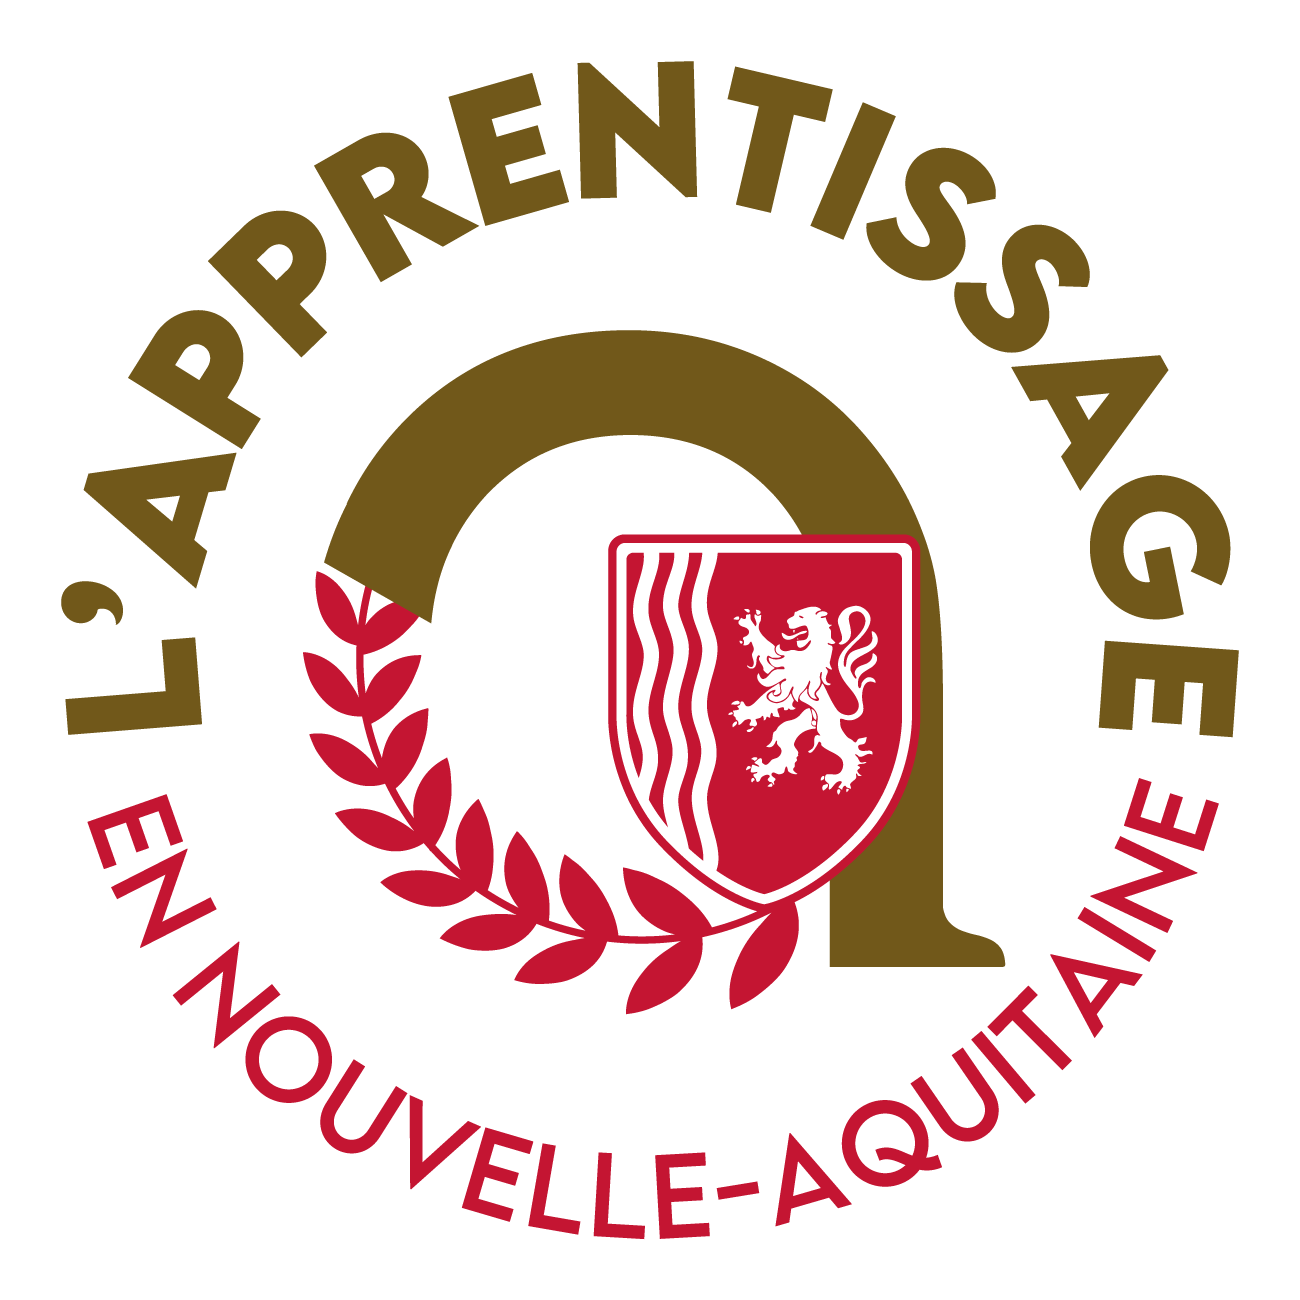 CAP Pâtissier  CFA Académique de Poitiers - Centre de formation des  apprentis